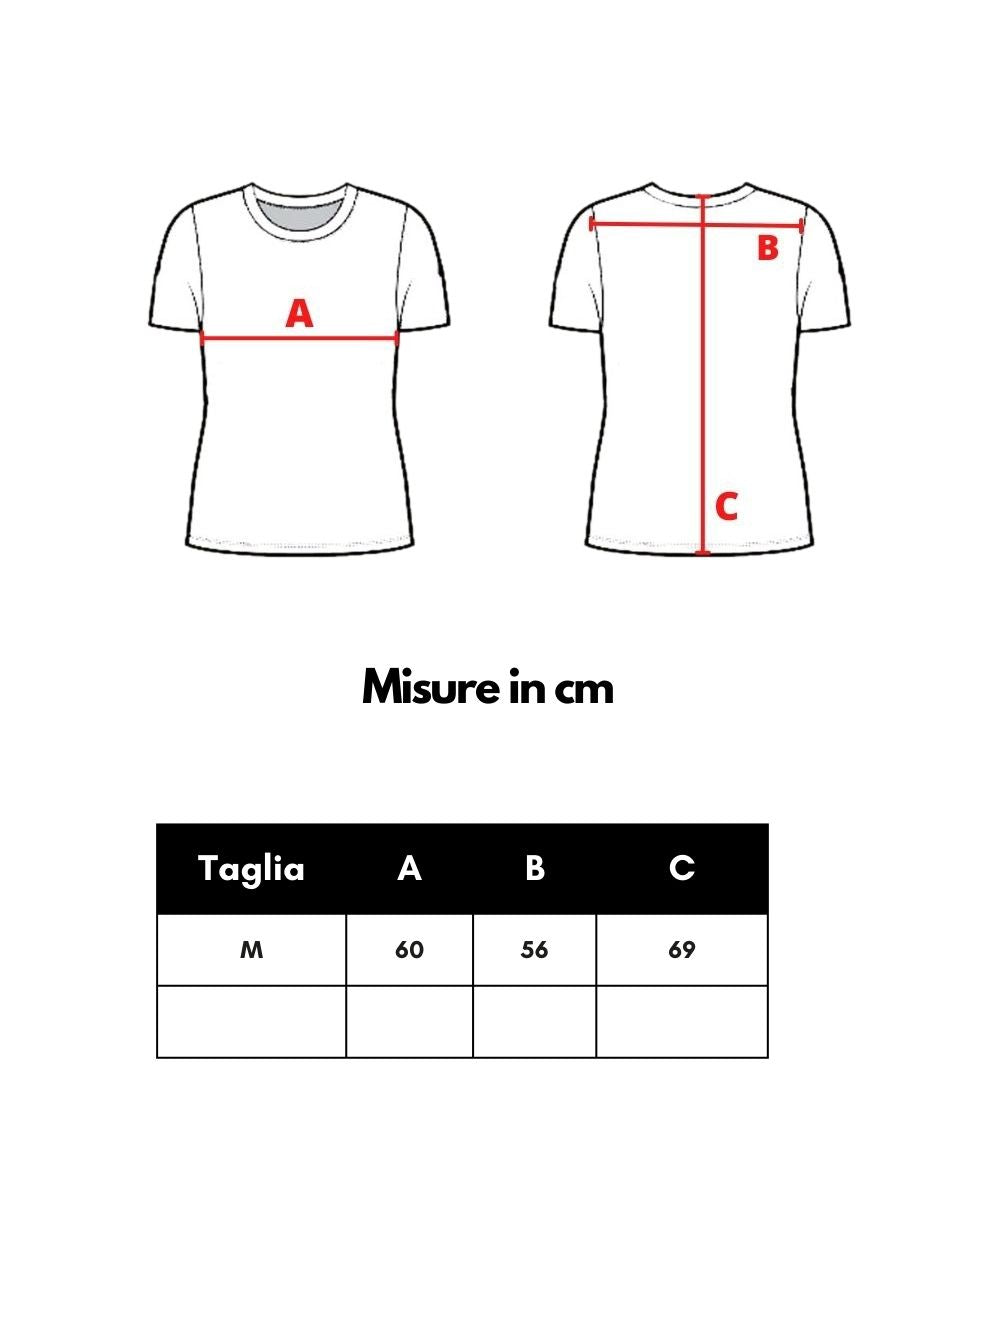 T-Shirt a costine Tye & Dye Armani Exchange